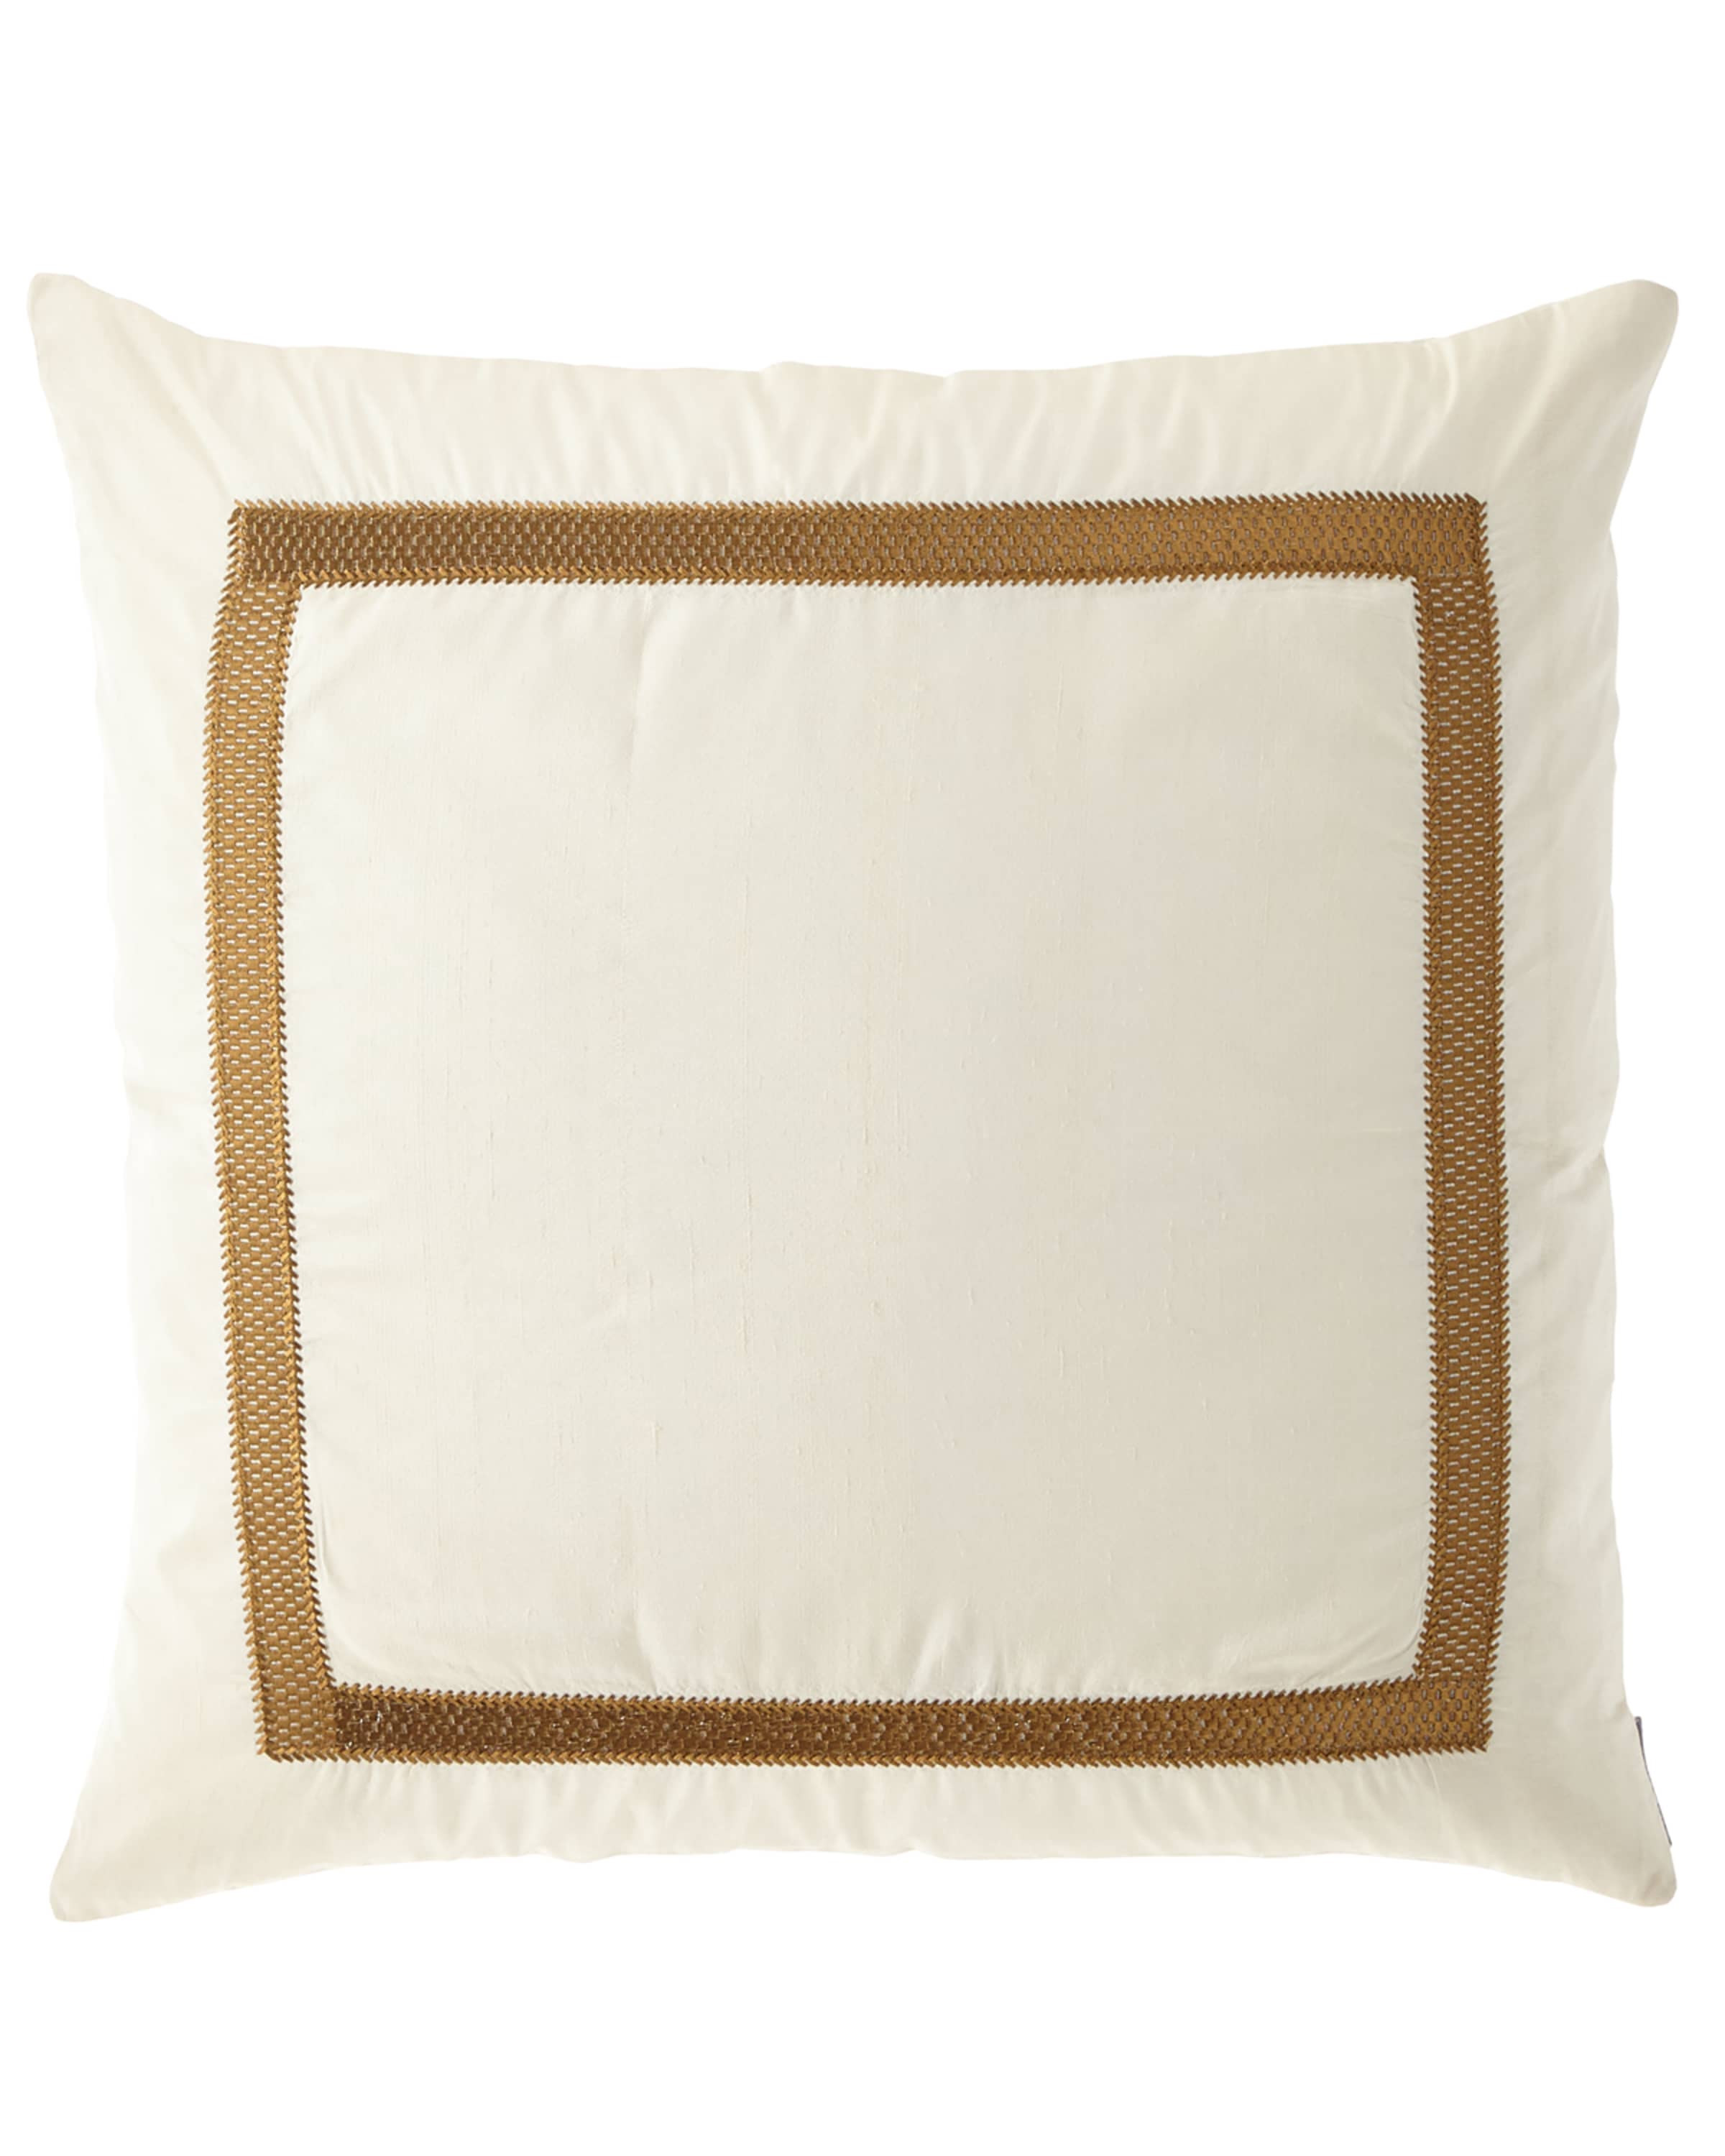 Lili Alessandra Caesar Decorative Pillow, 24"Sq.